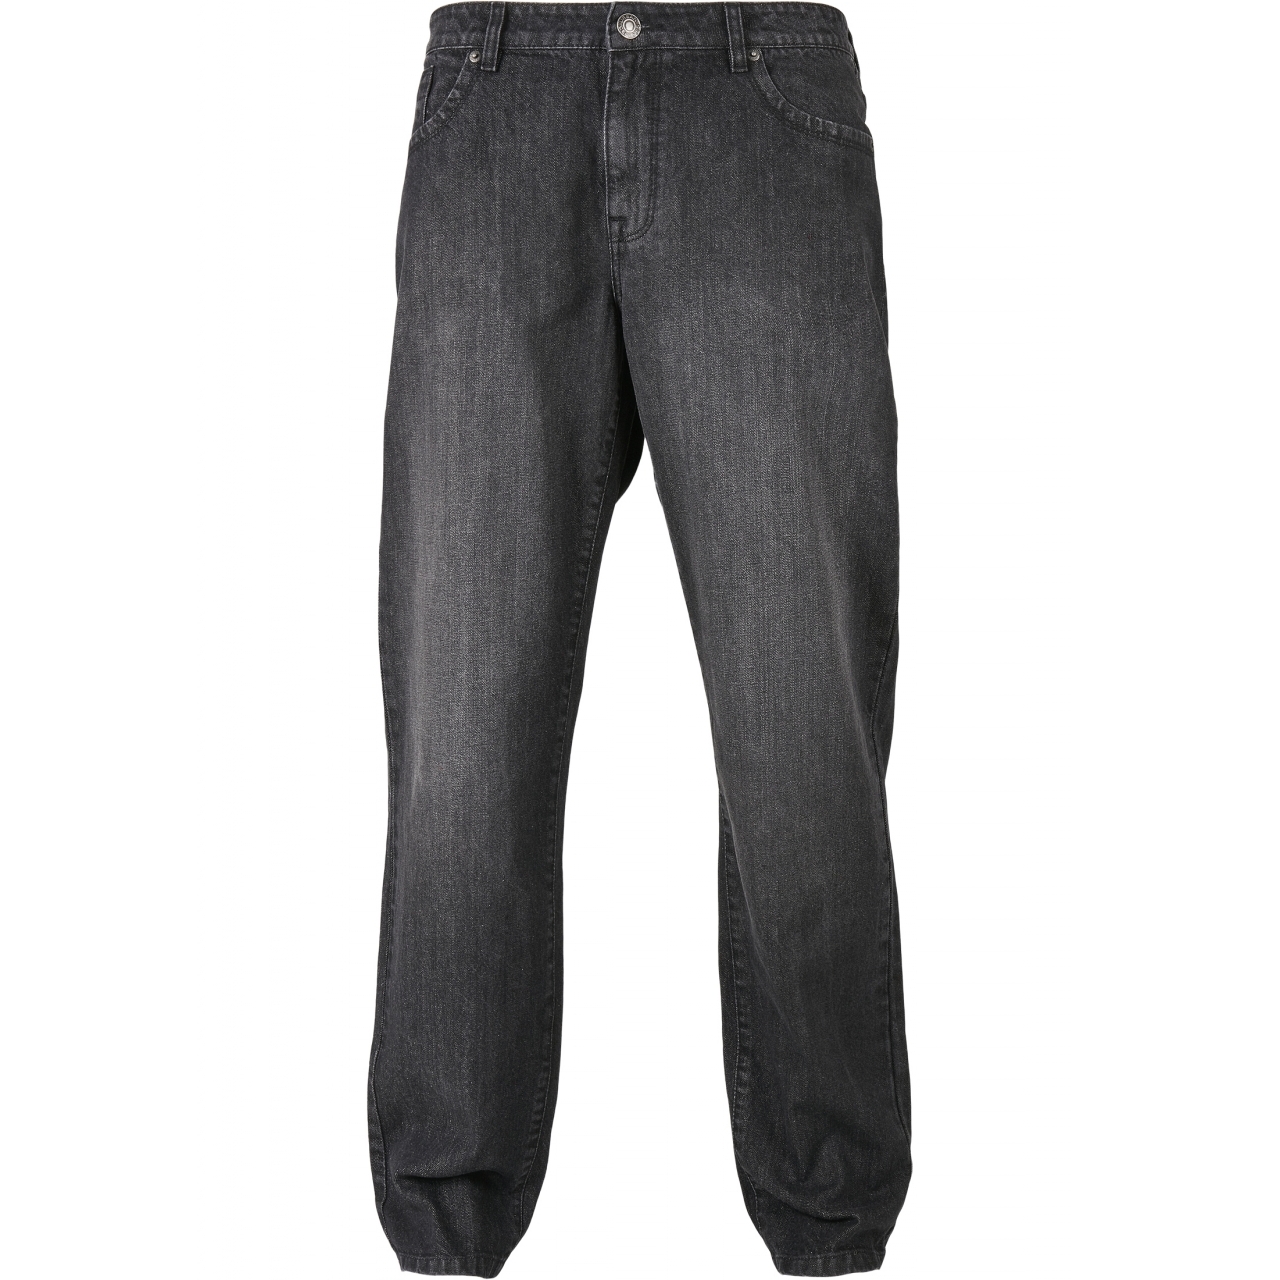 Džíny Urban Classics Loose Fit Jeans - černé, 32/34